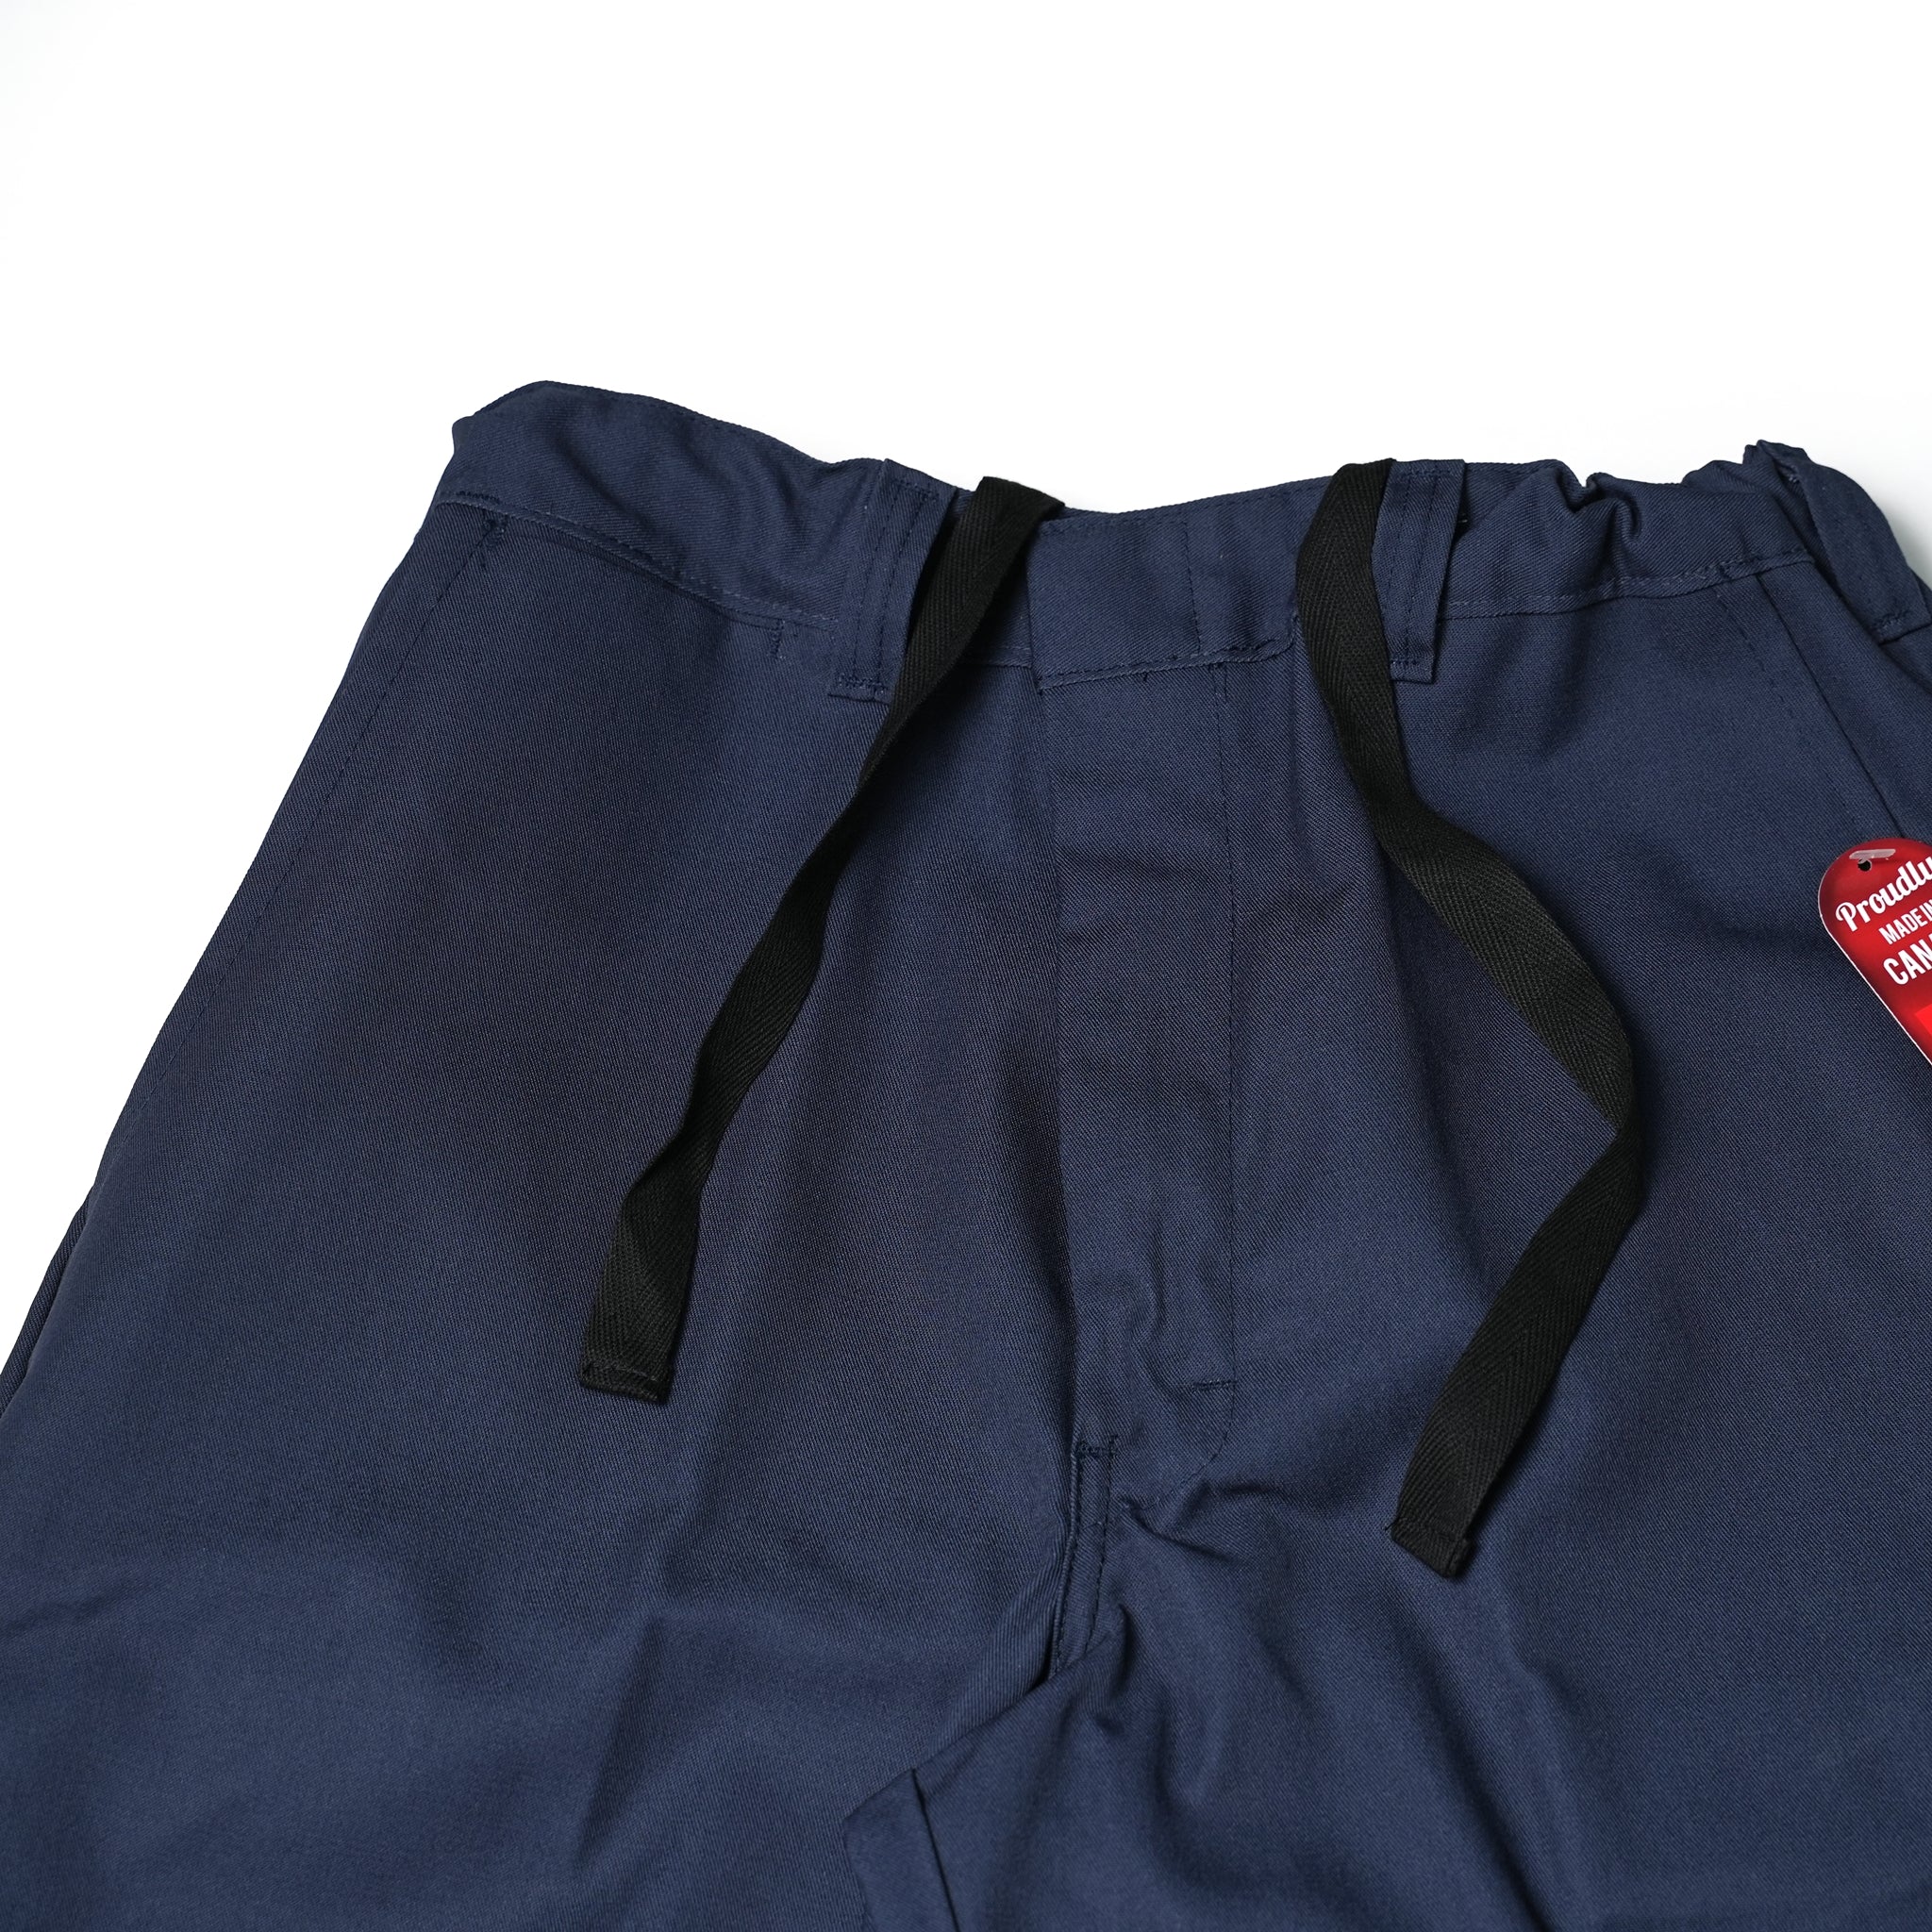 No:1947-CT | Name:Premium Regular Fit Work Pants Big Easy  NEW | Color:Navy/Tan/Green【BIG BILL_ビッグビル】